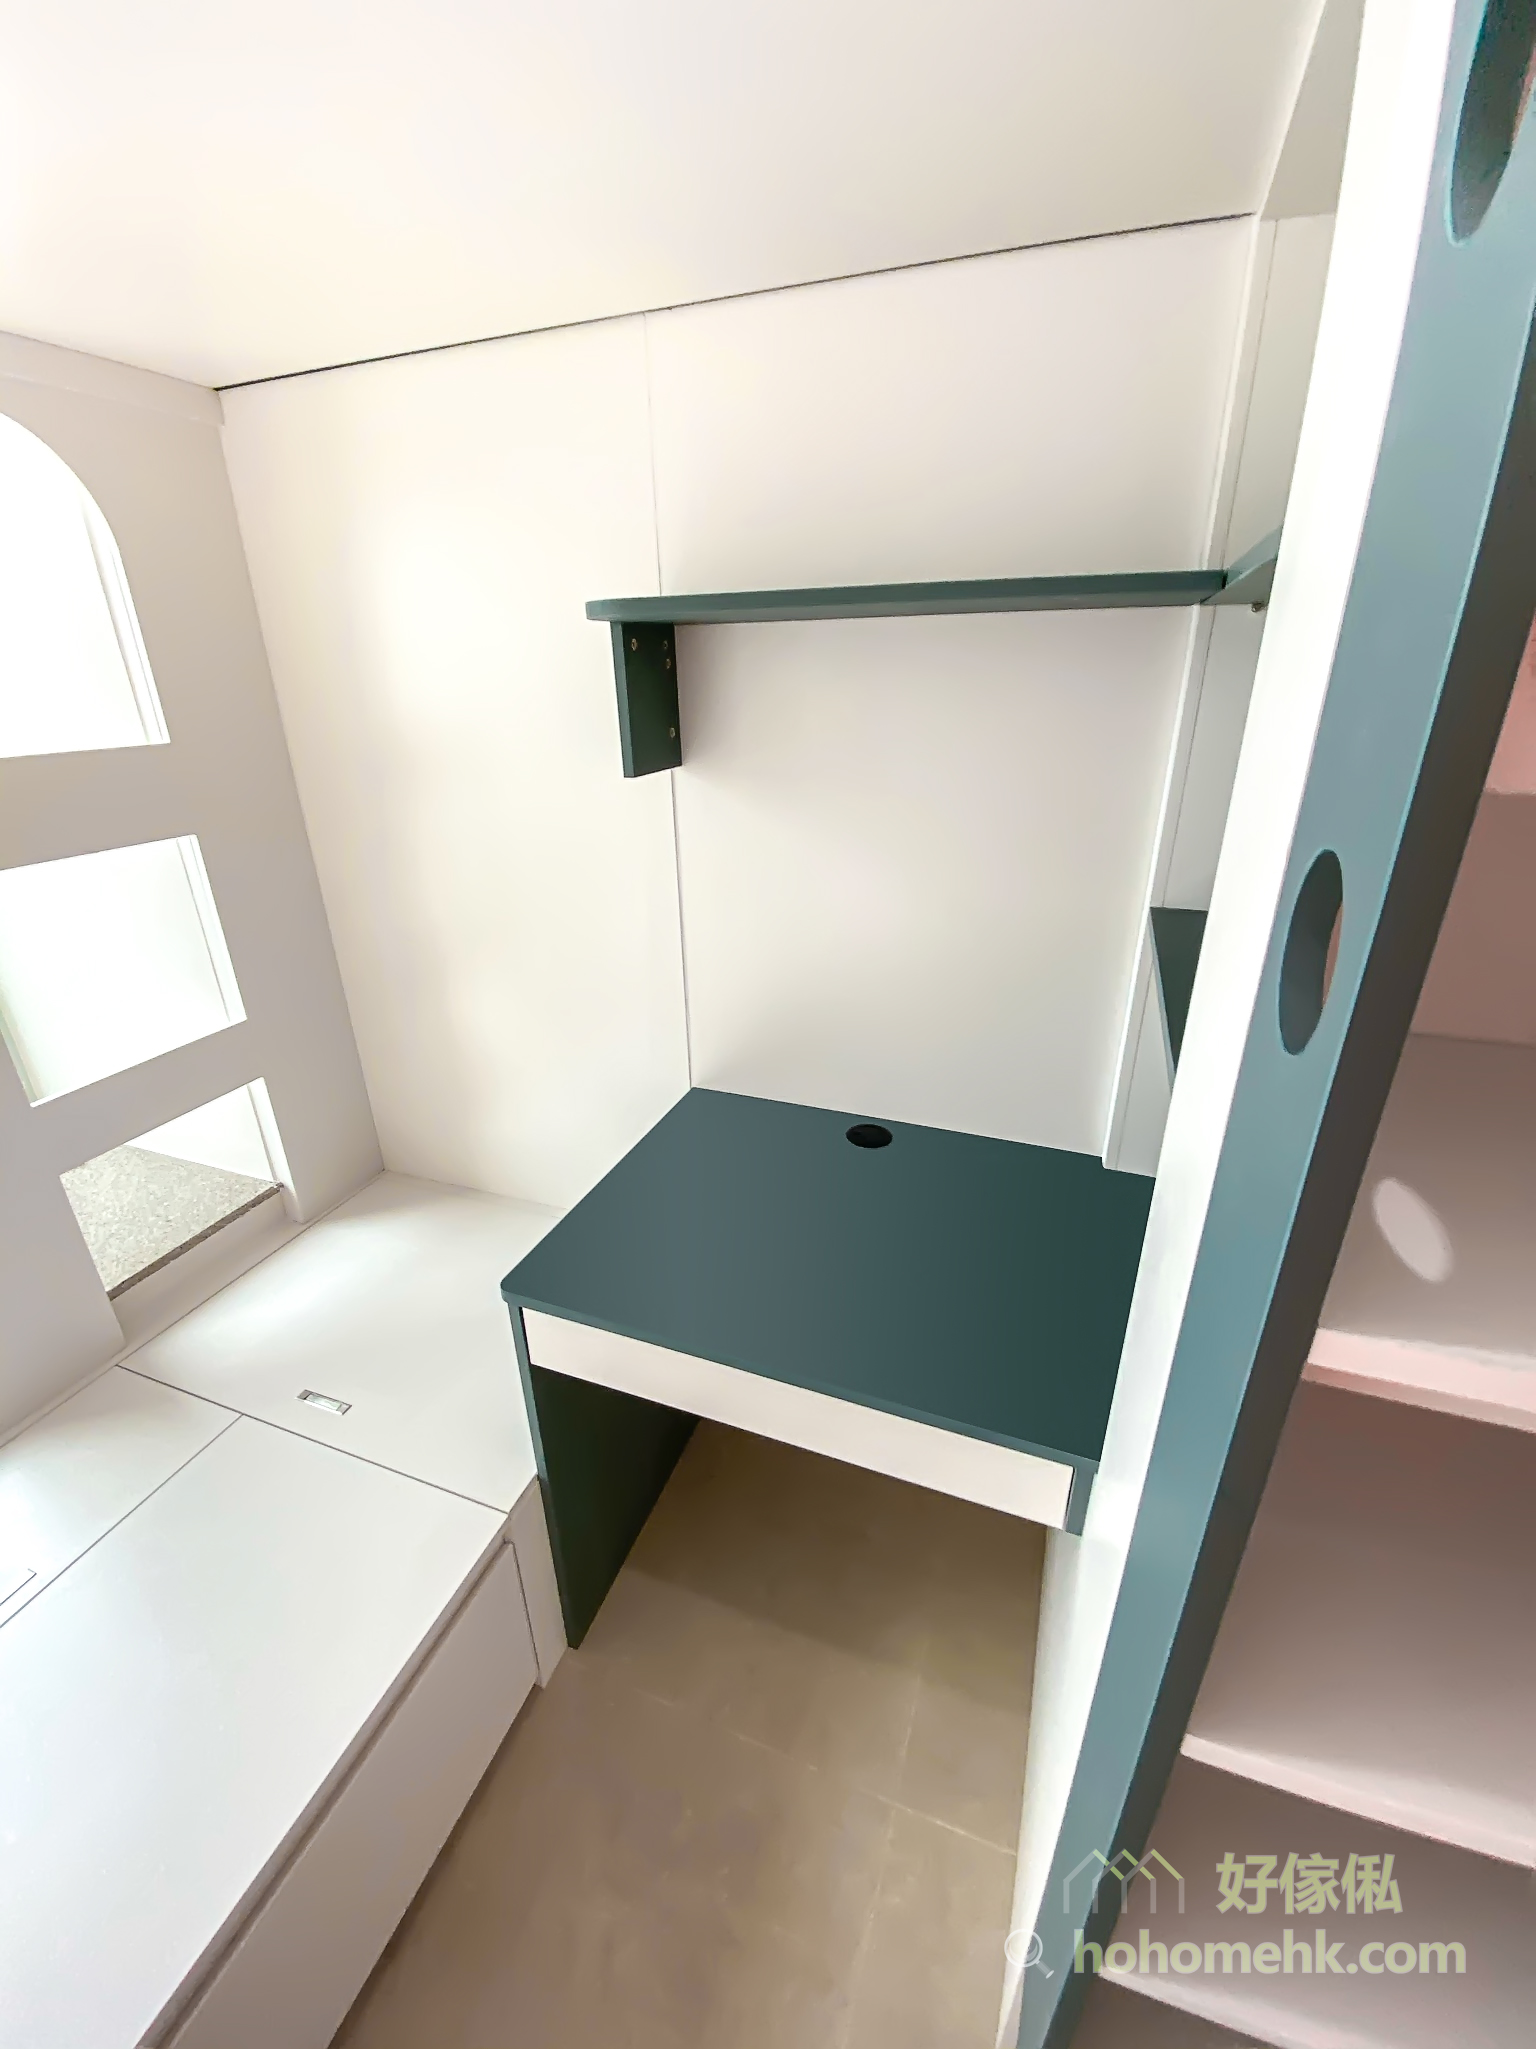 台灣設計師將爬梯融入成為儲物櫃的一部份 —— 最前的部份是爬梯的腳踏部份、中間是開放式的儲物櫃，後方則成為側面書枱的延伸儲物空間